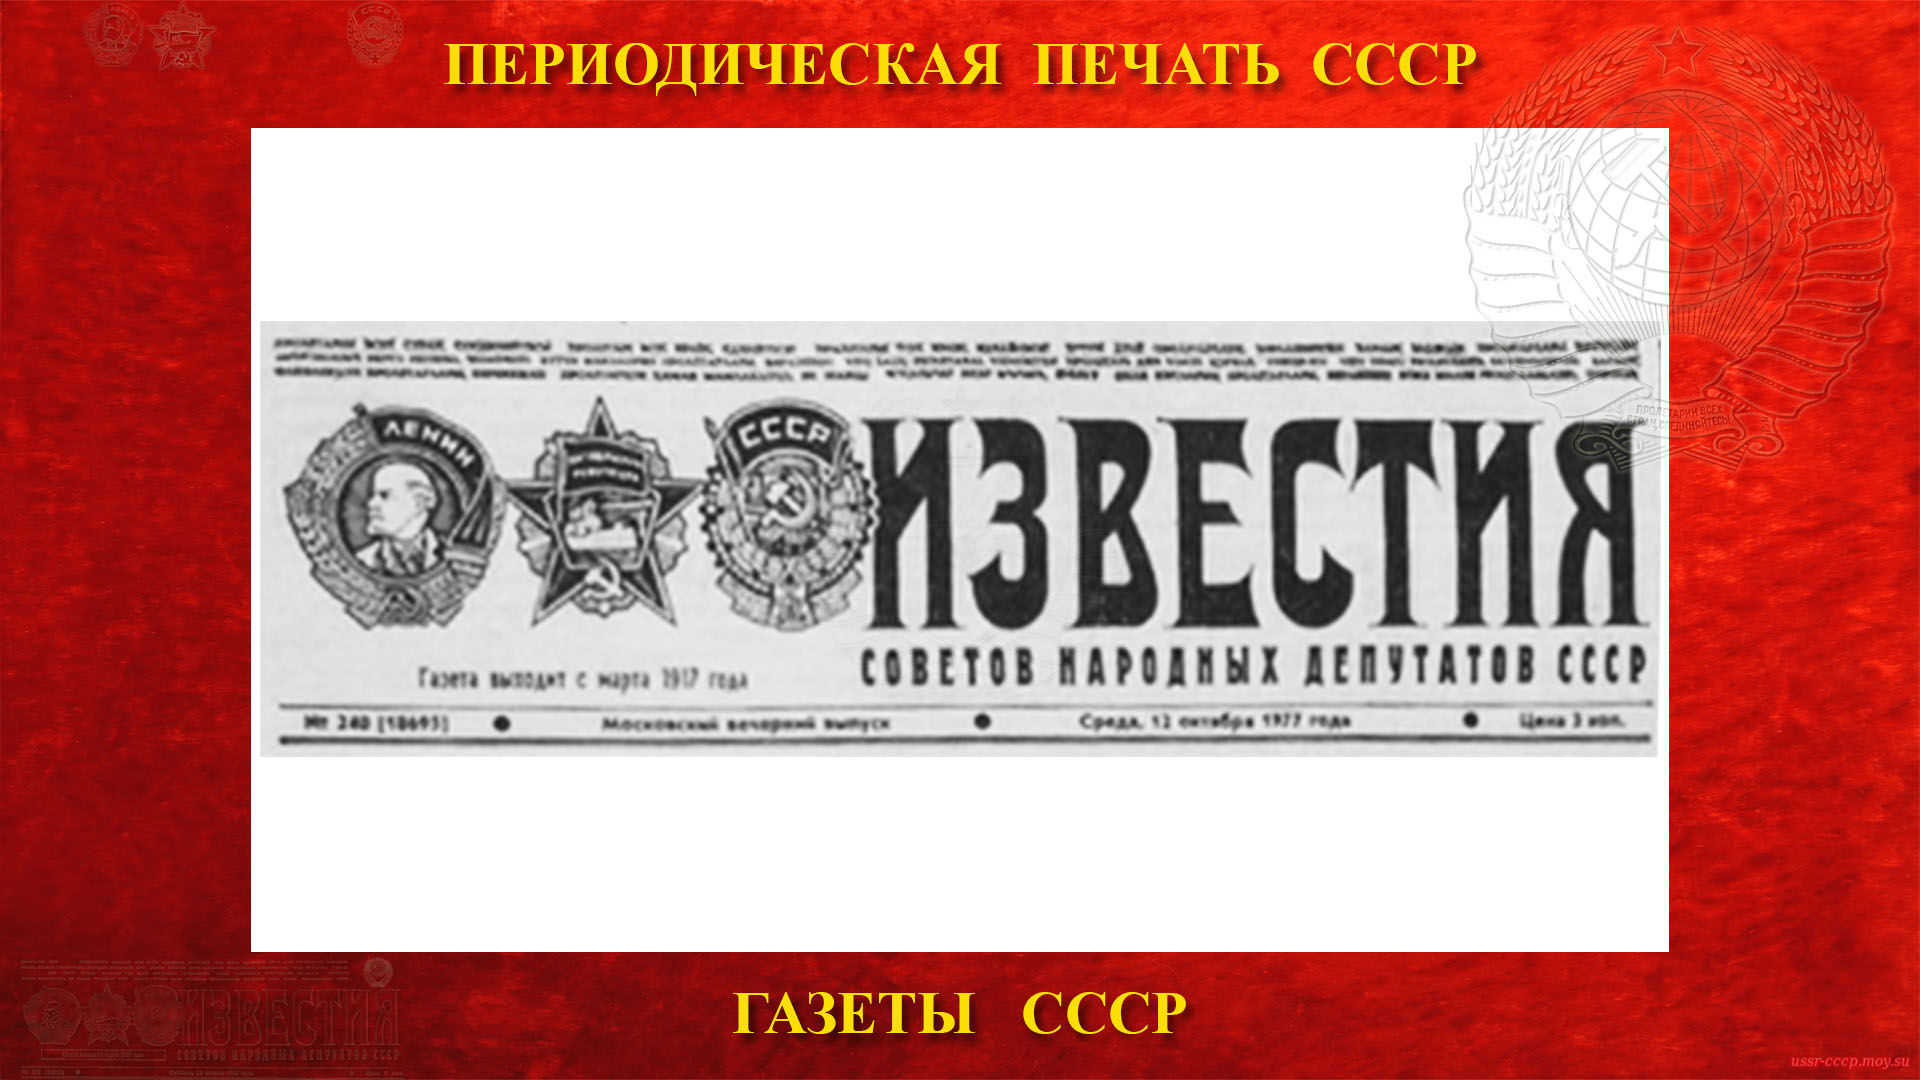 «ИЗВЕСТИЯ» — Советская ежедневная газета в СССР (повествование)